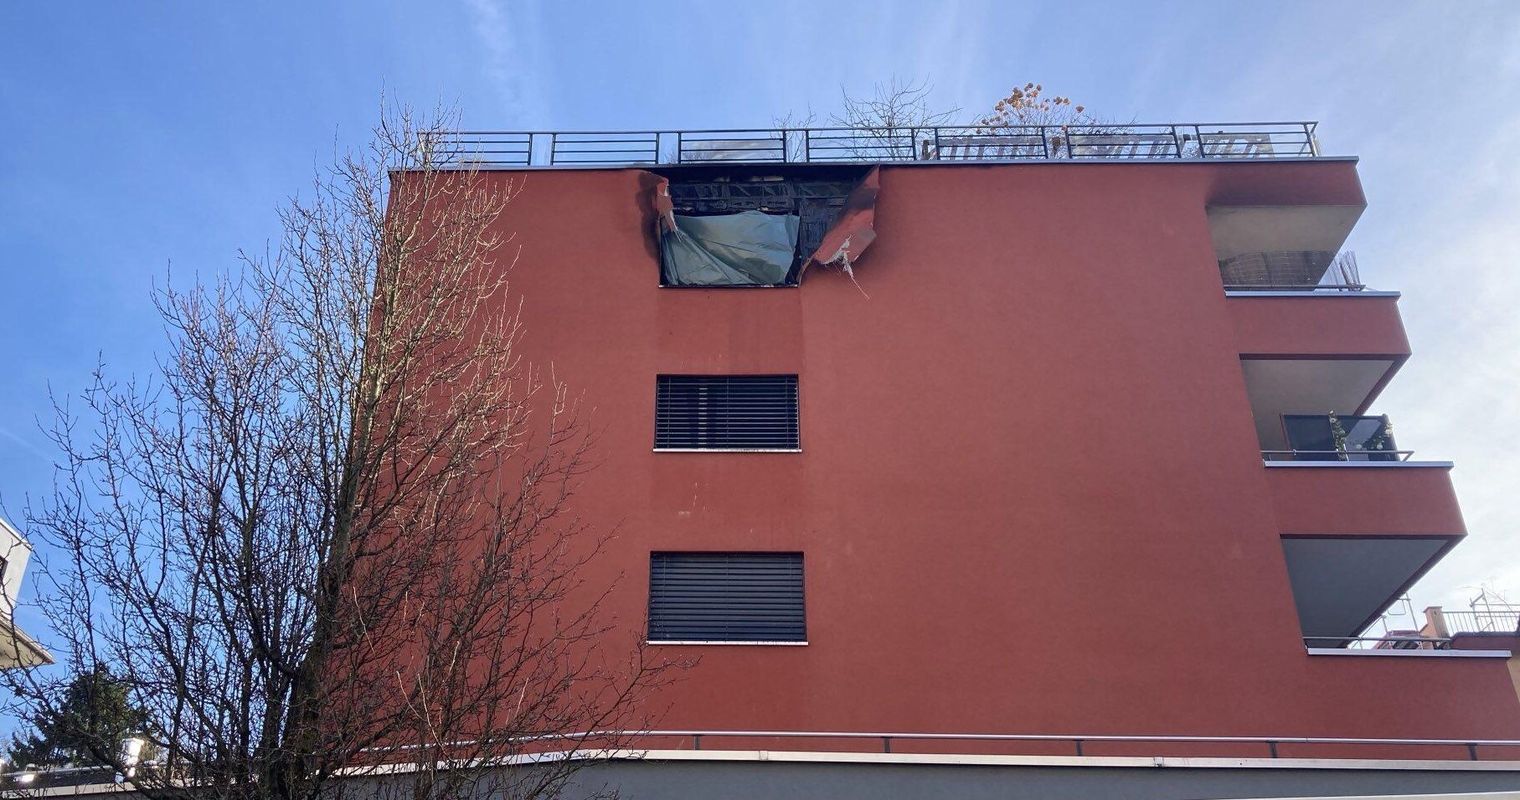 Wohnhausbrand in Luzern: Ein Verletzter und ein Todesopfer